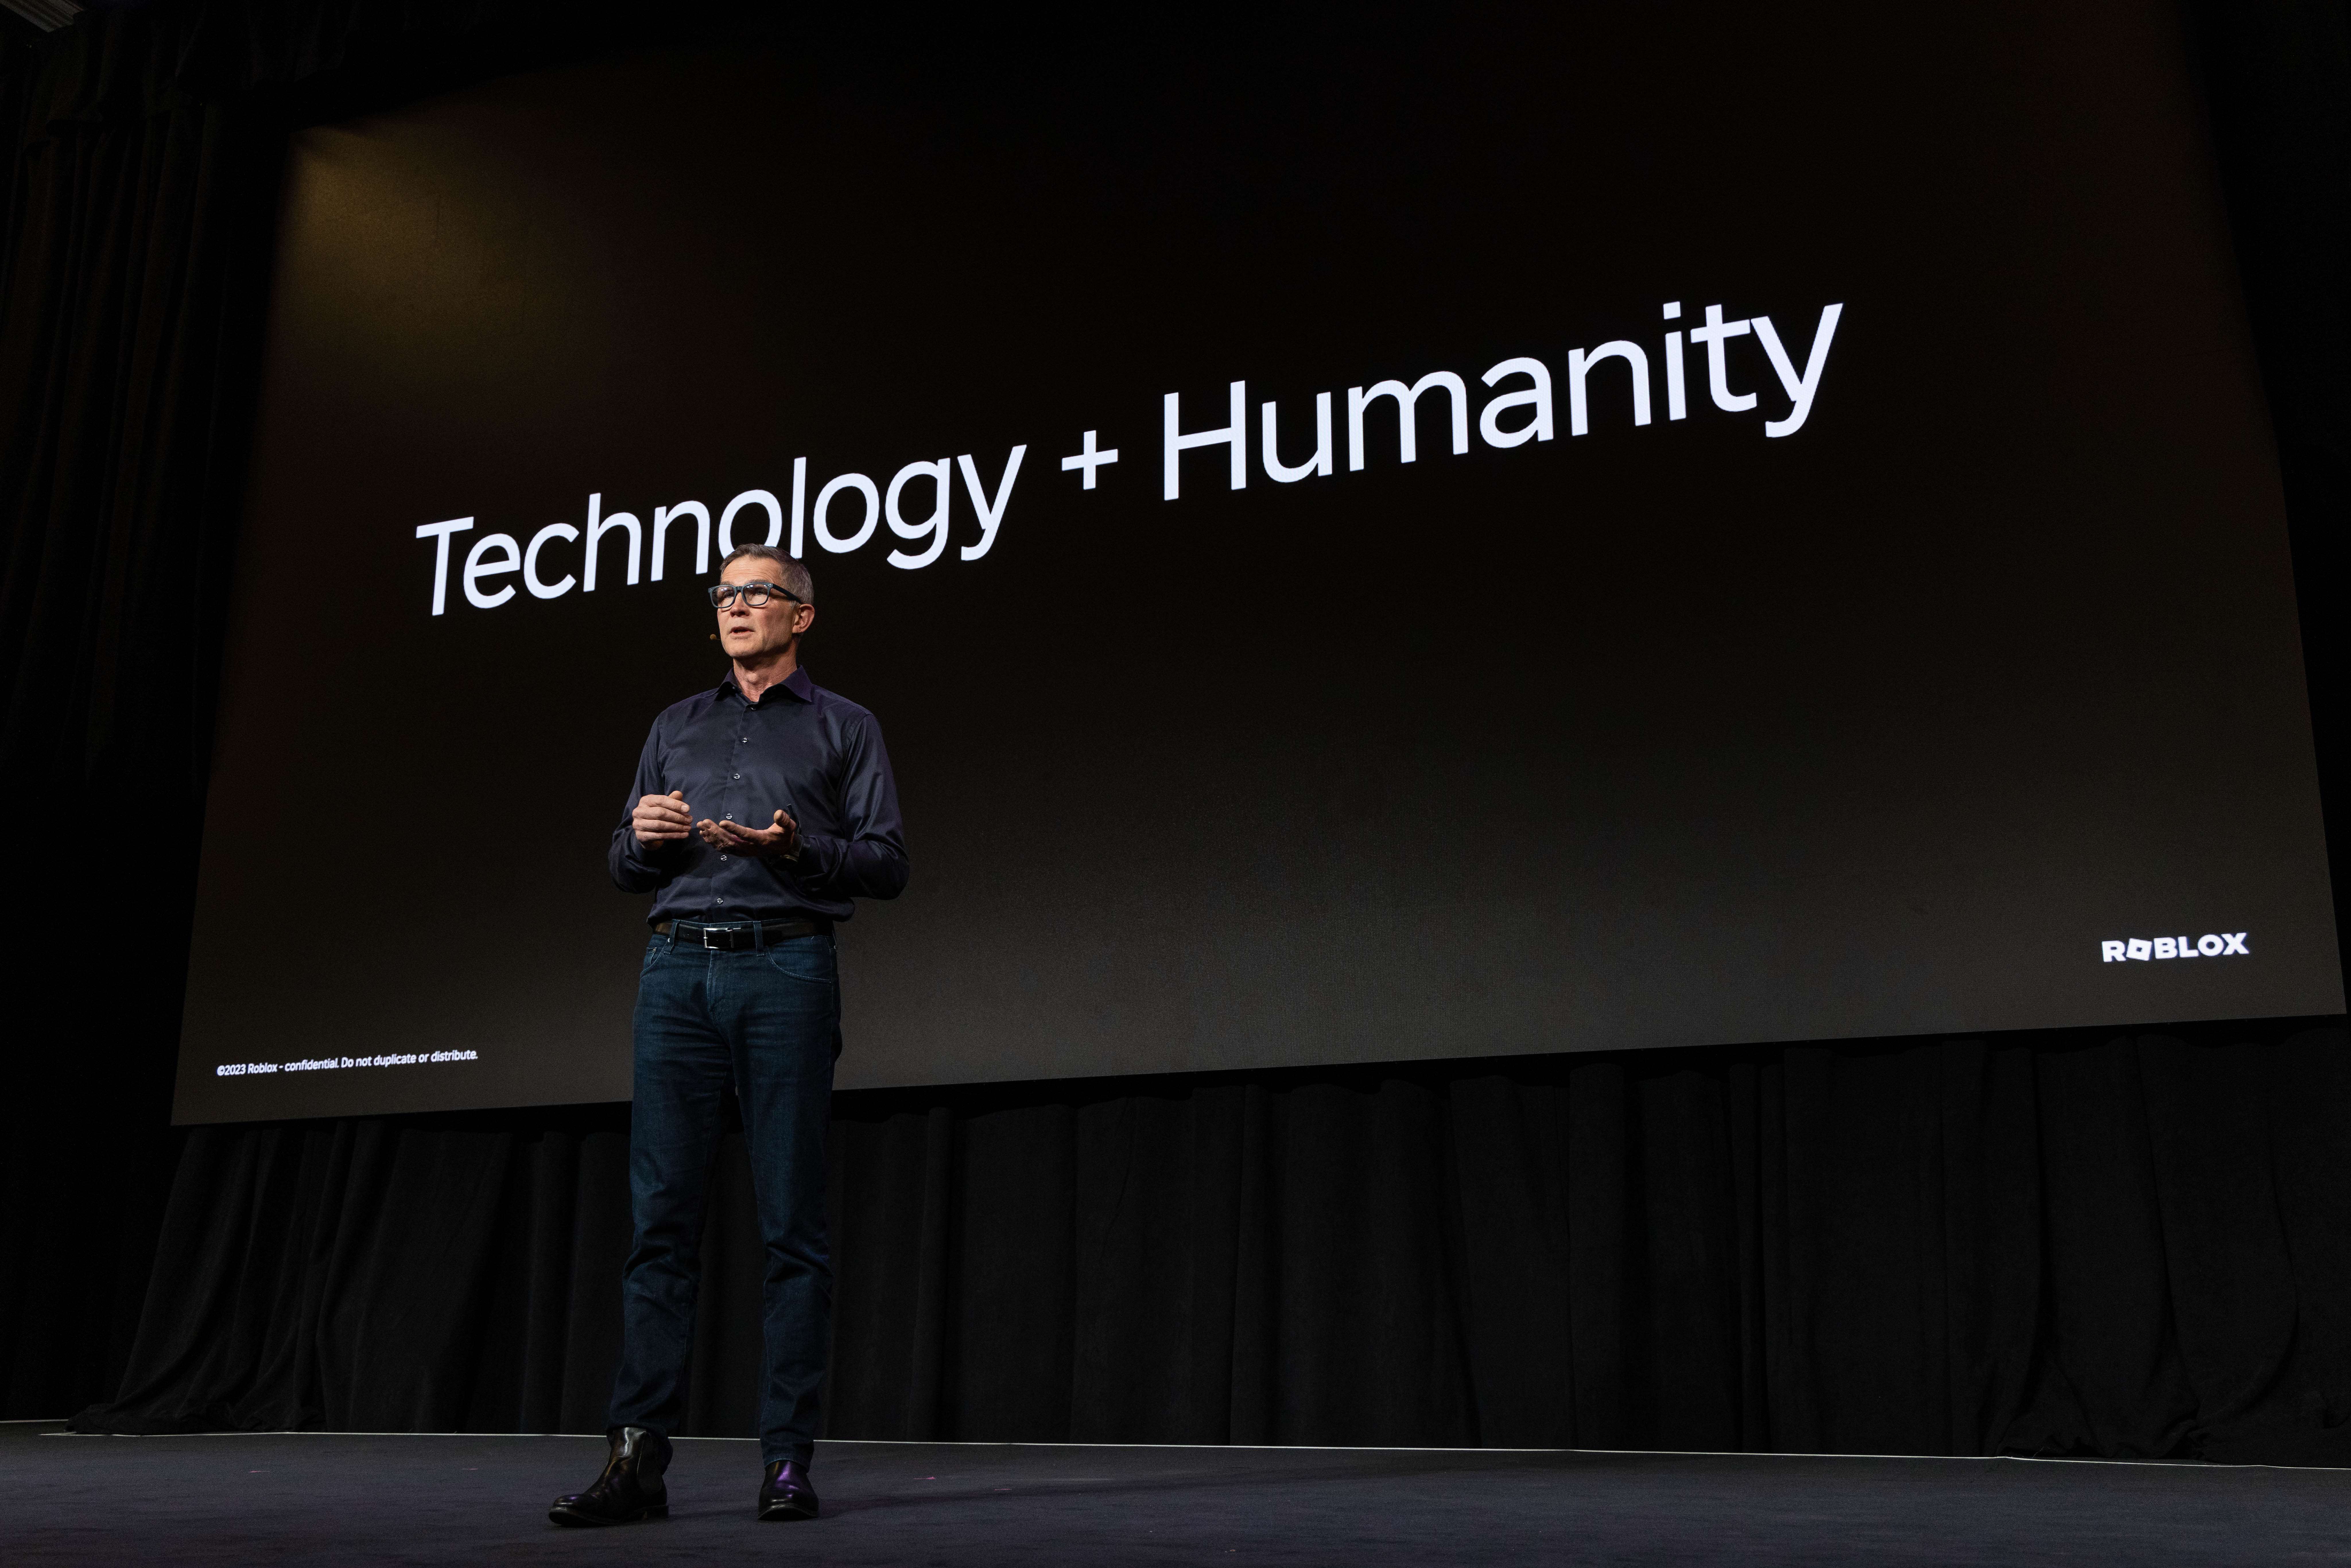 David stând pe scenă în fața unui tobogan pe care scrie Technology + Humanity